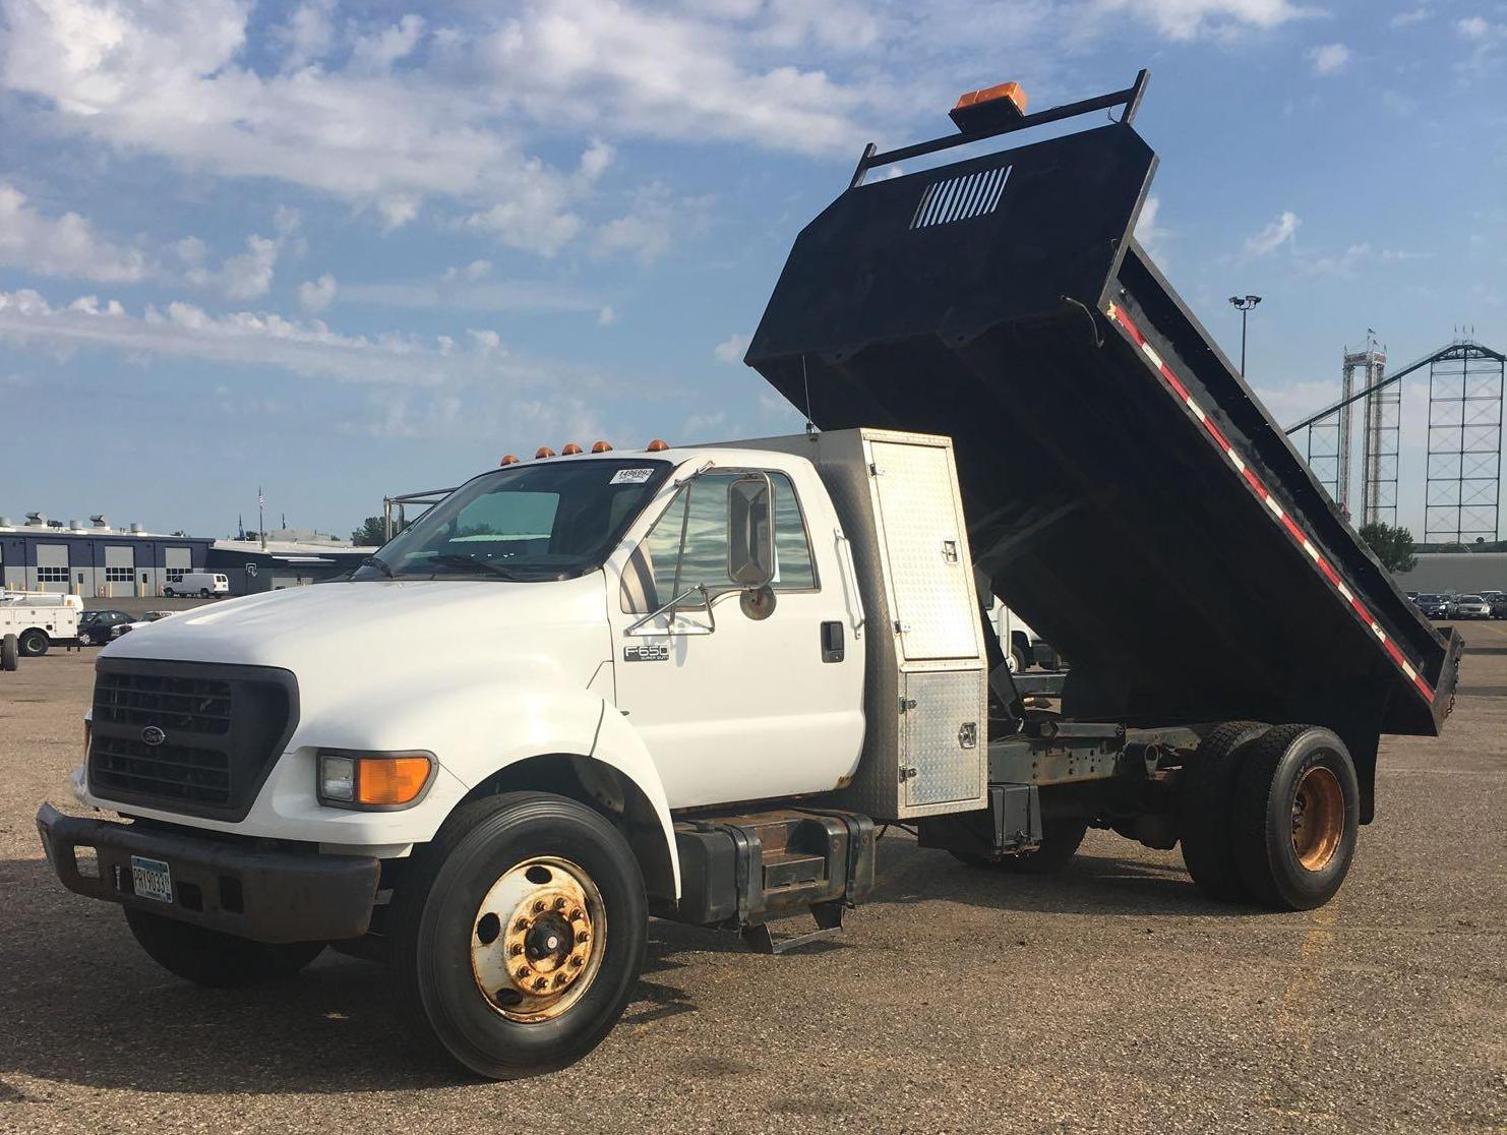 2016 Ram 1500 Cargo Van - (3) Dump Trucks - (1) Plow Truck